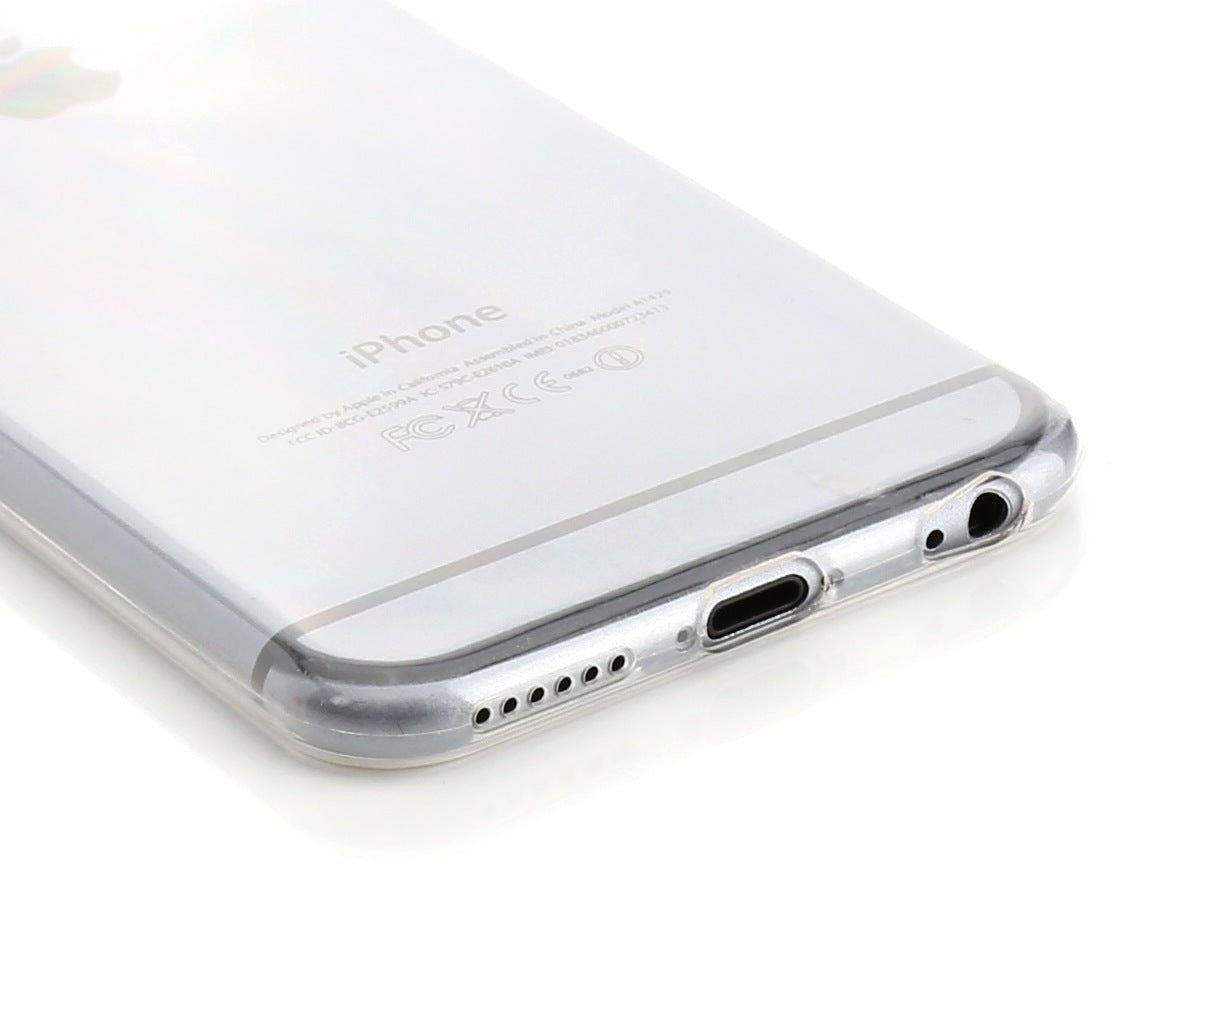 iphone-6-cases53fc2c02e0b86